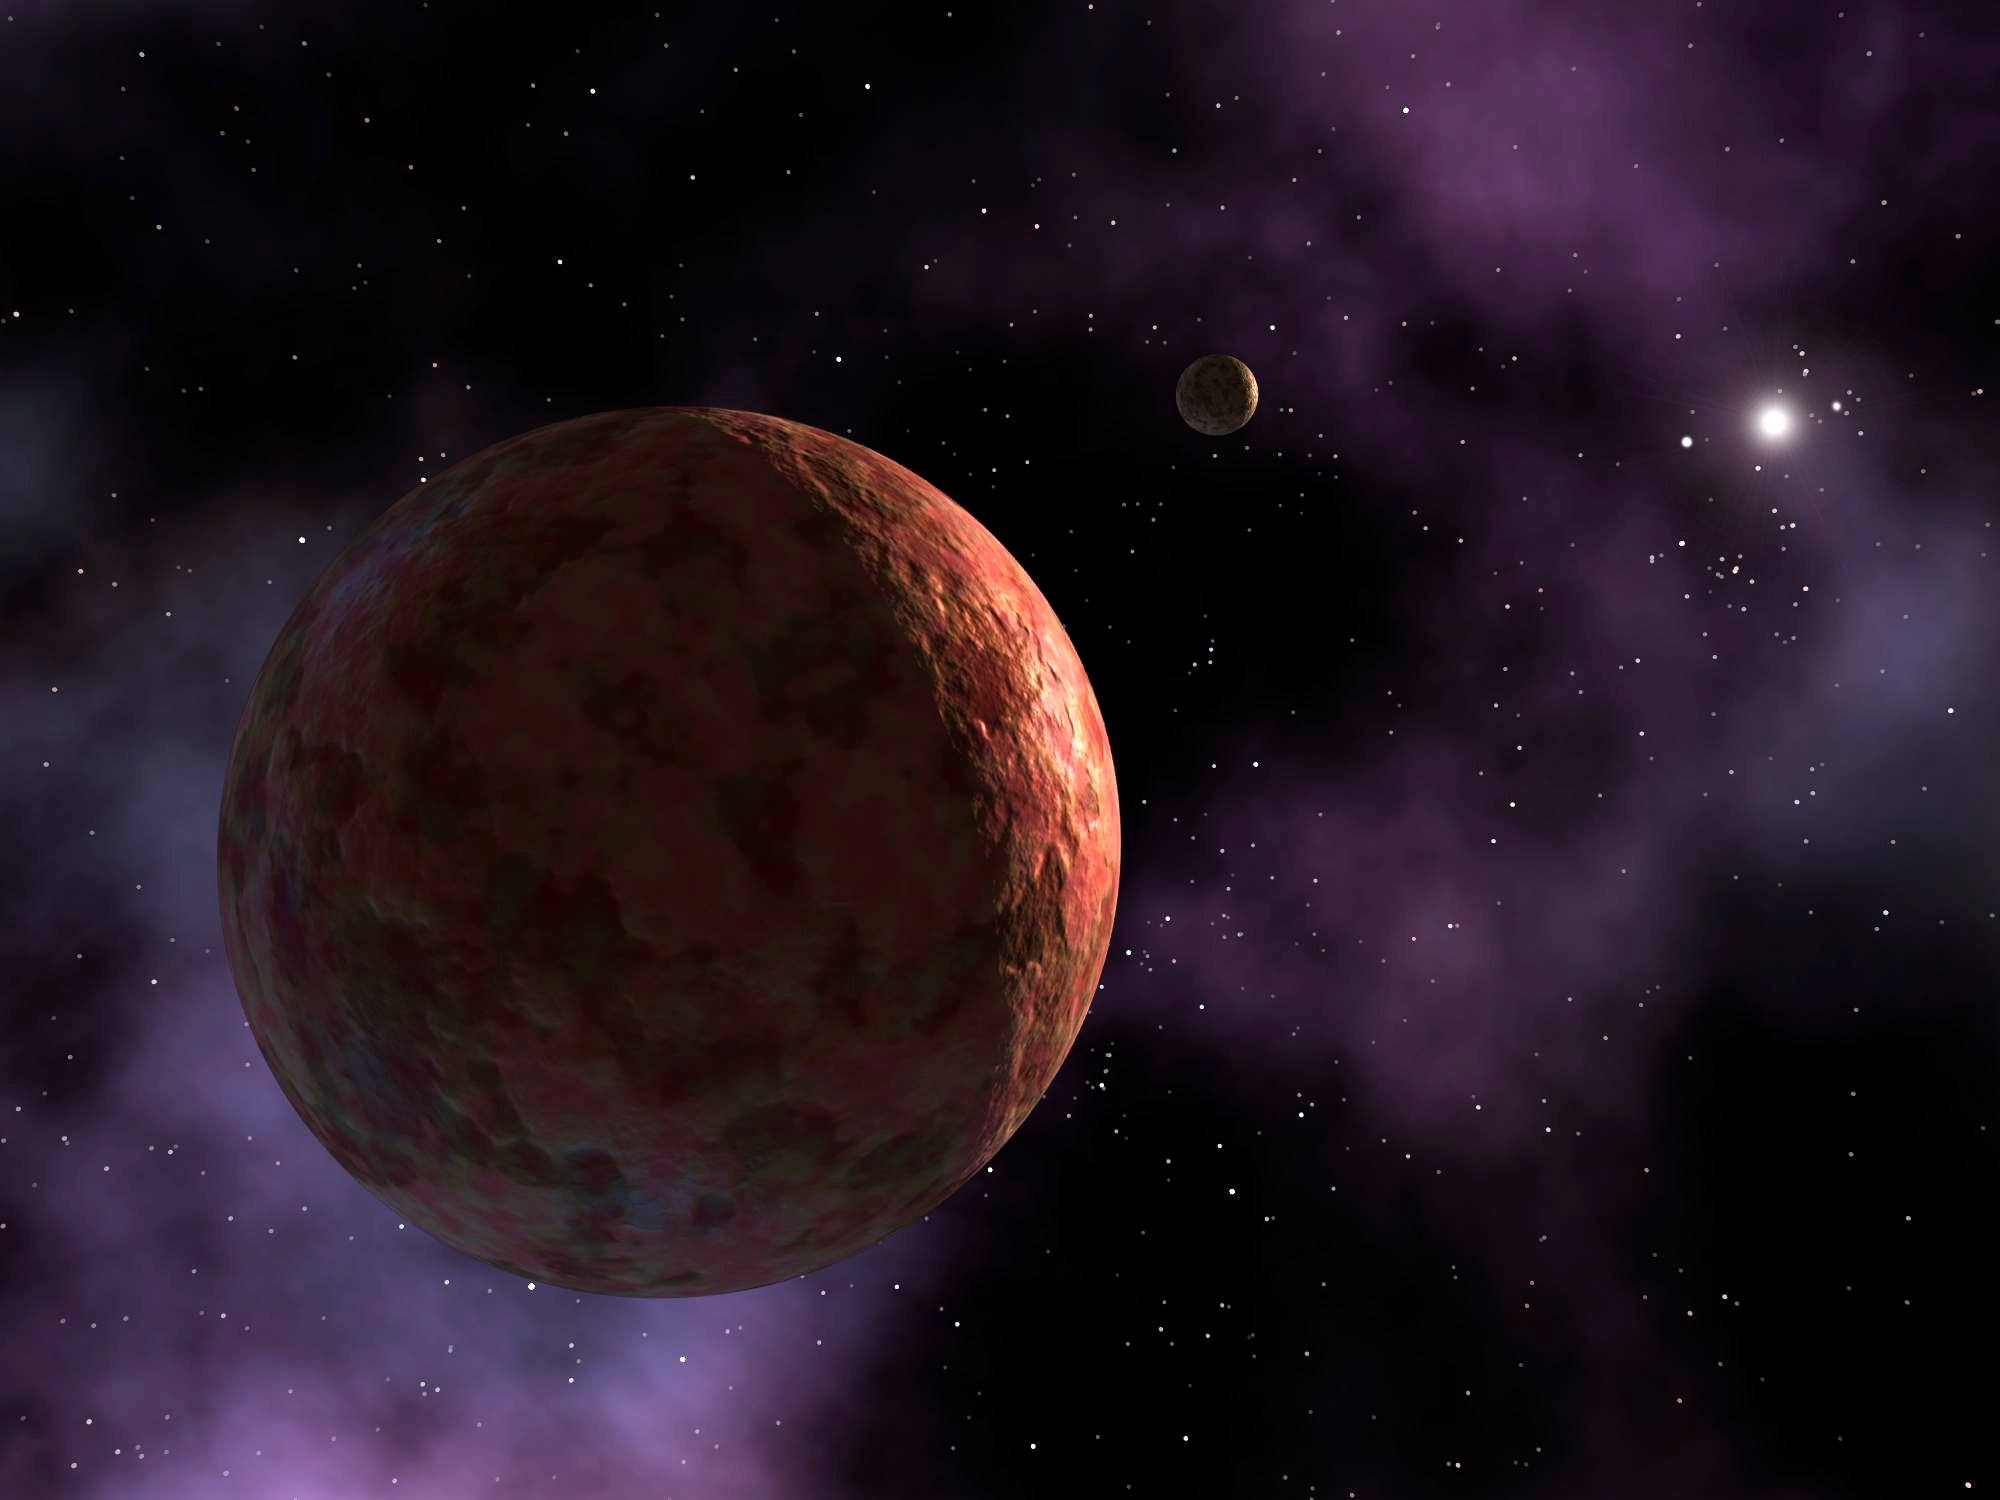 Webb observes three dwarf planets in the Kuiper Belt